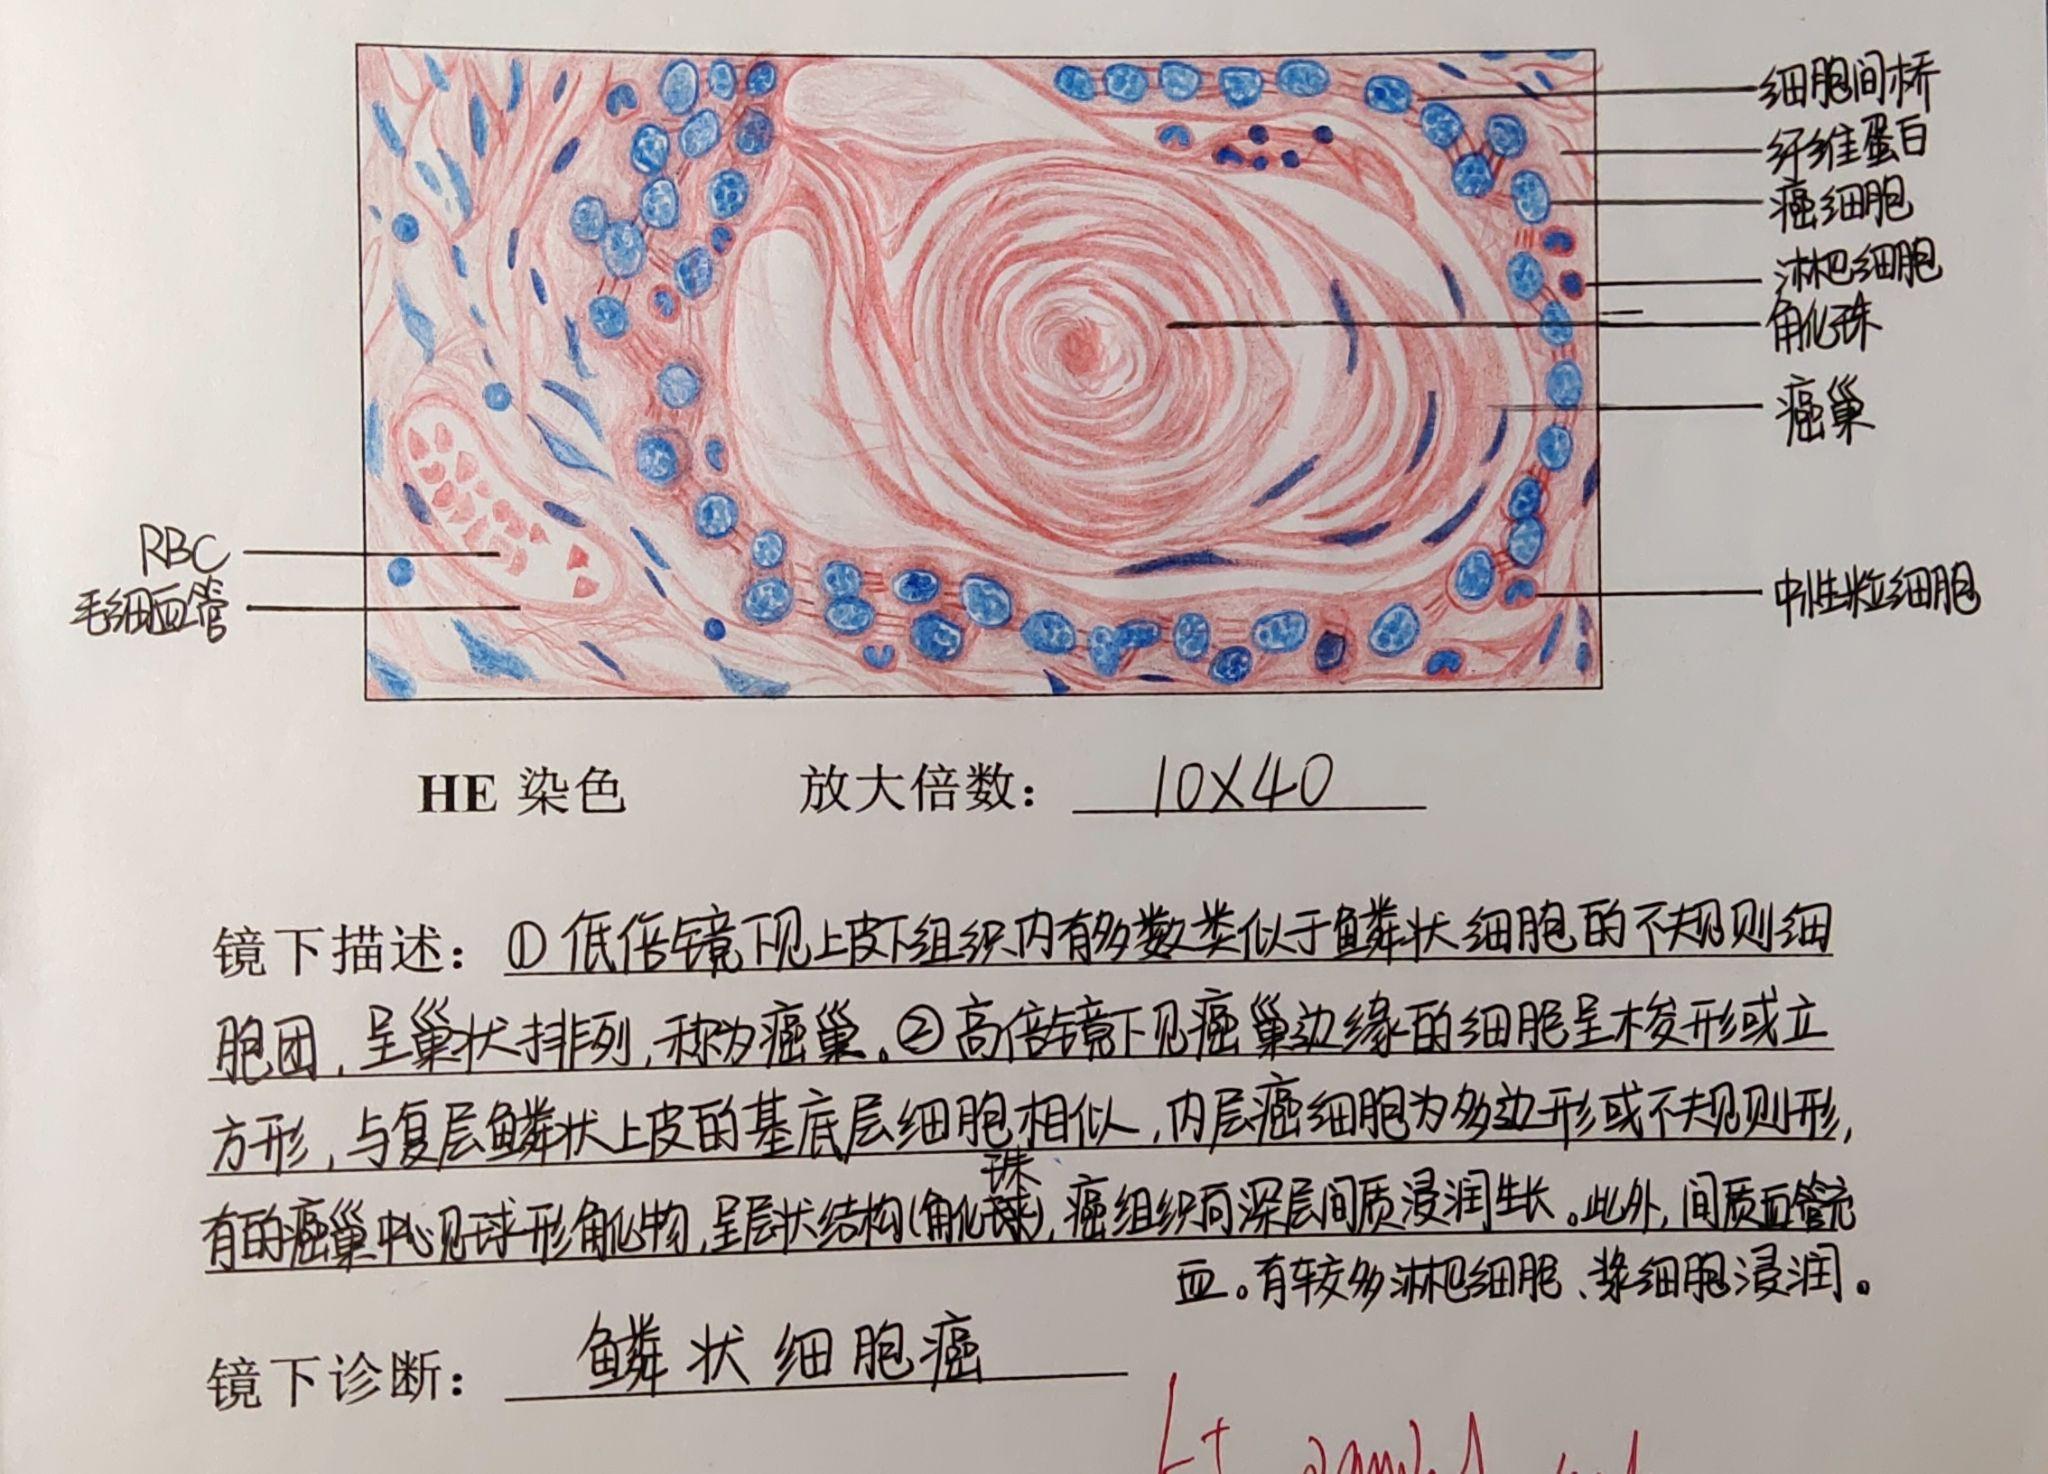 红细胞红蓝铅笔手绘图图片